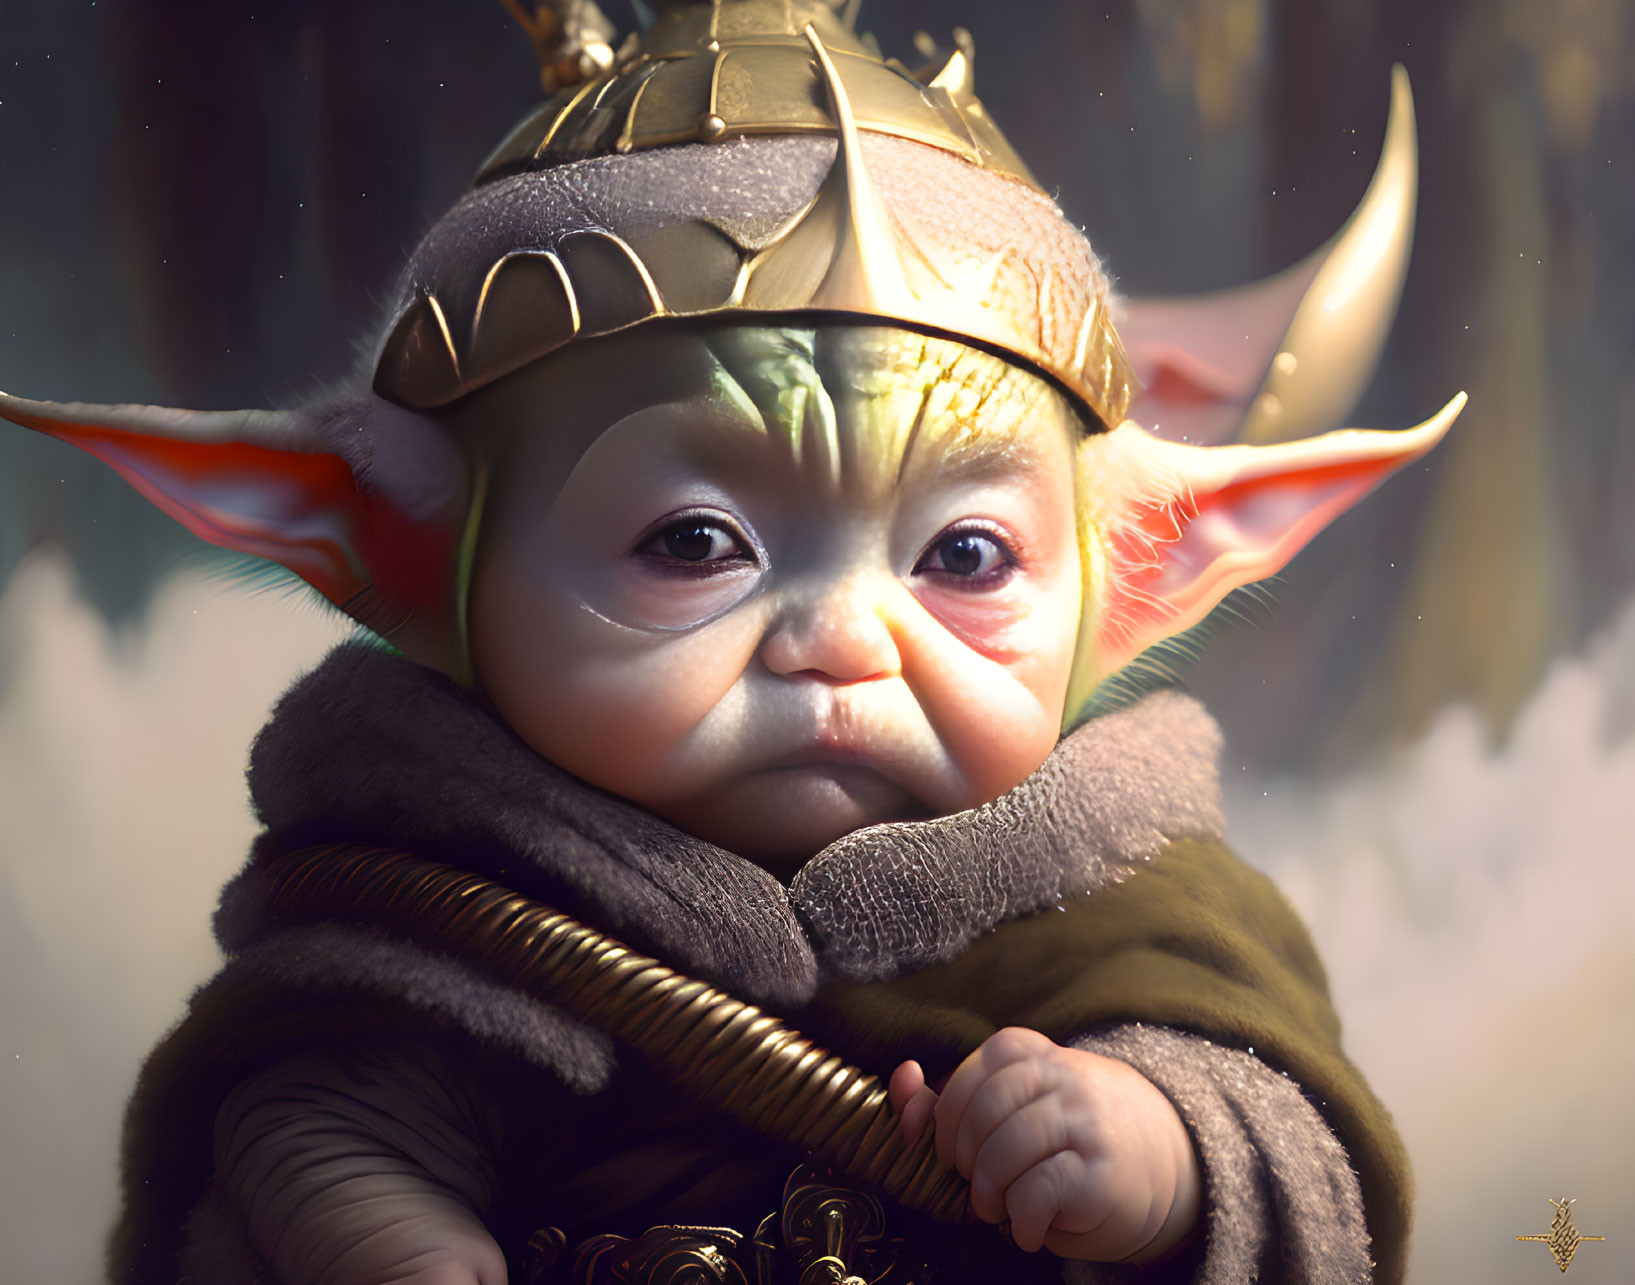 Digital artwork: Baby with elf ears in Viking helmet & cloak